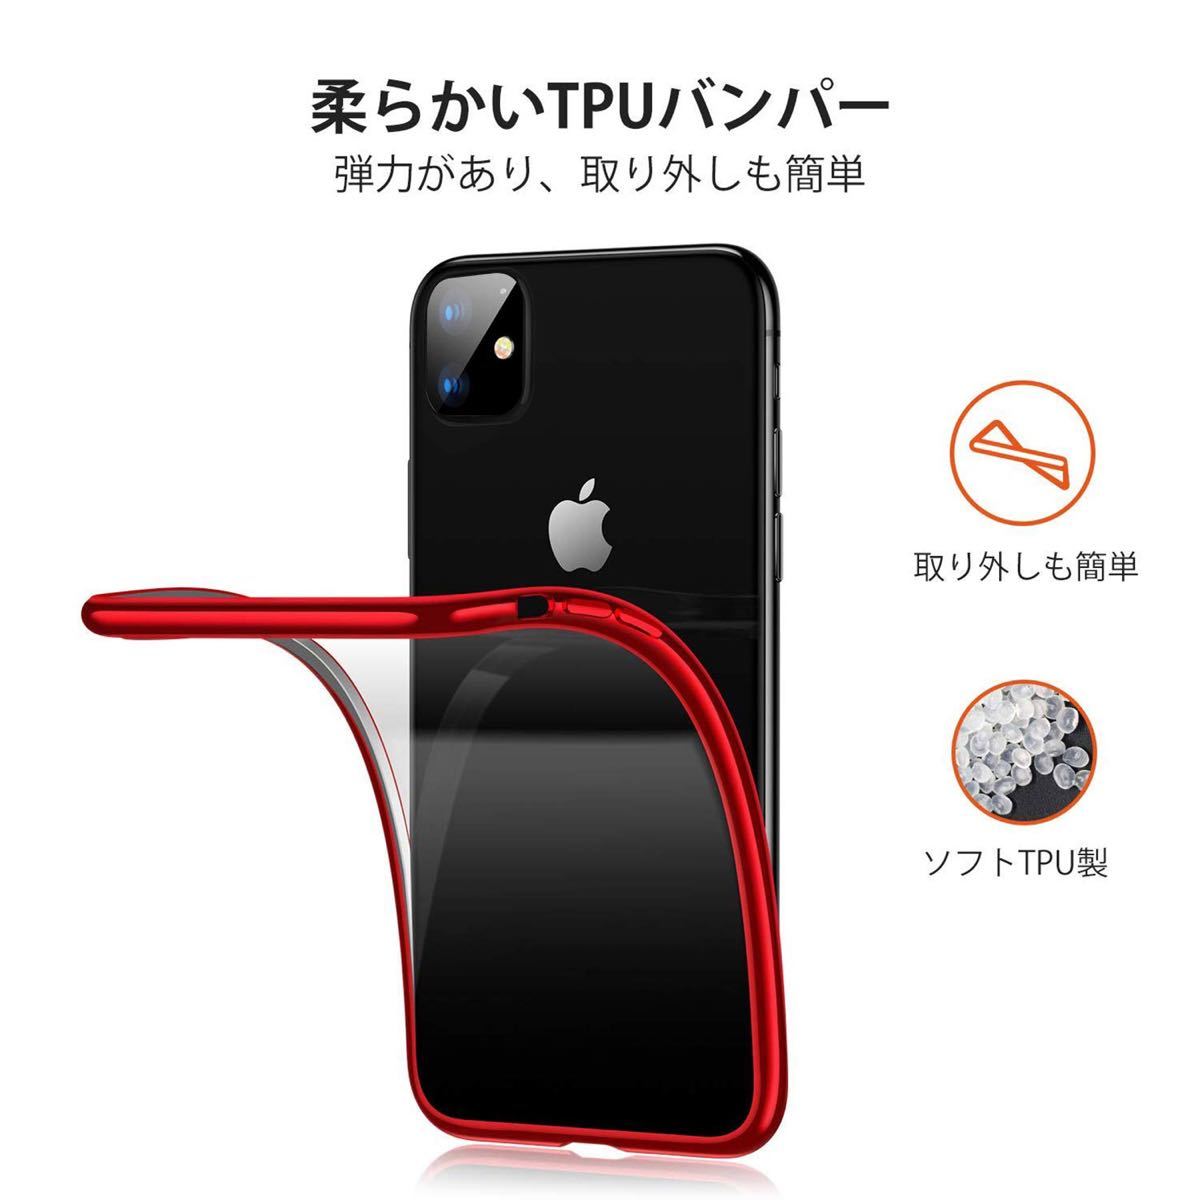 iPhone 11 ケース クリア 透明 tpu シリコン メッキ加工 スリム 薄型 6.1インチ スマホケース 耐衝撃 レッド